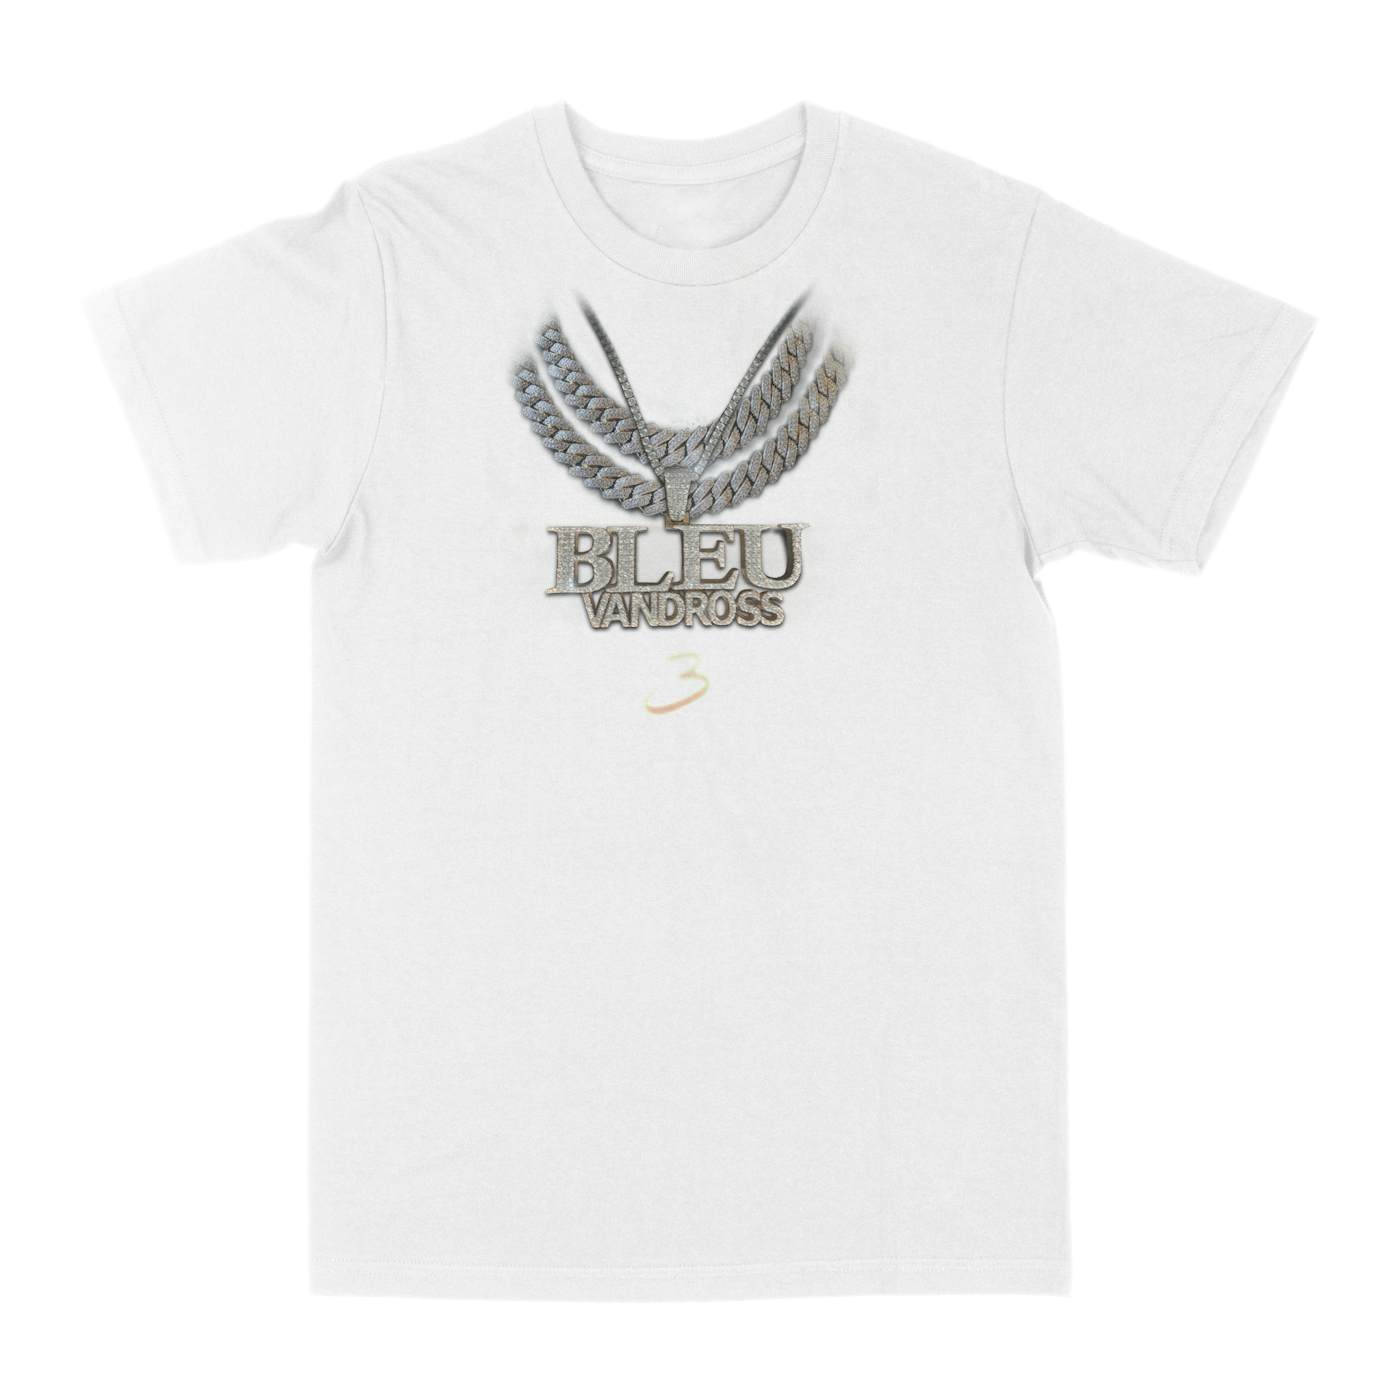 Yung Bleu - Bleu Vandross White T-Shirt + Digital Download